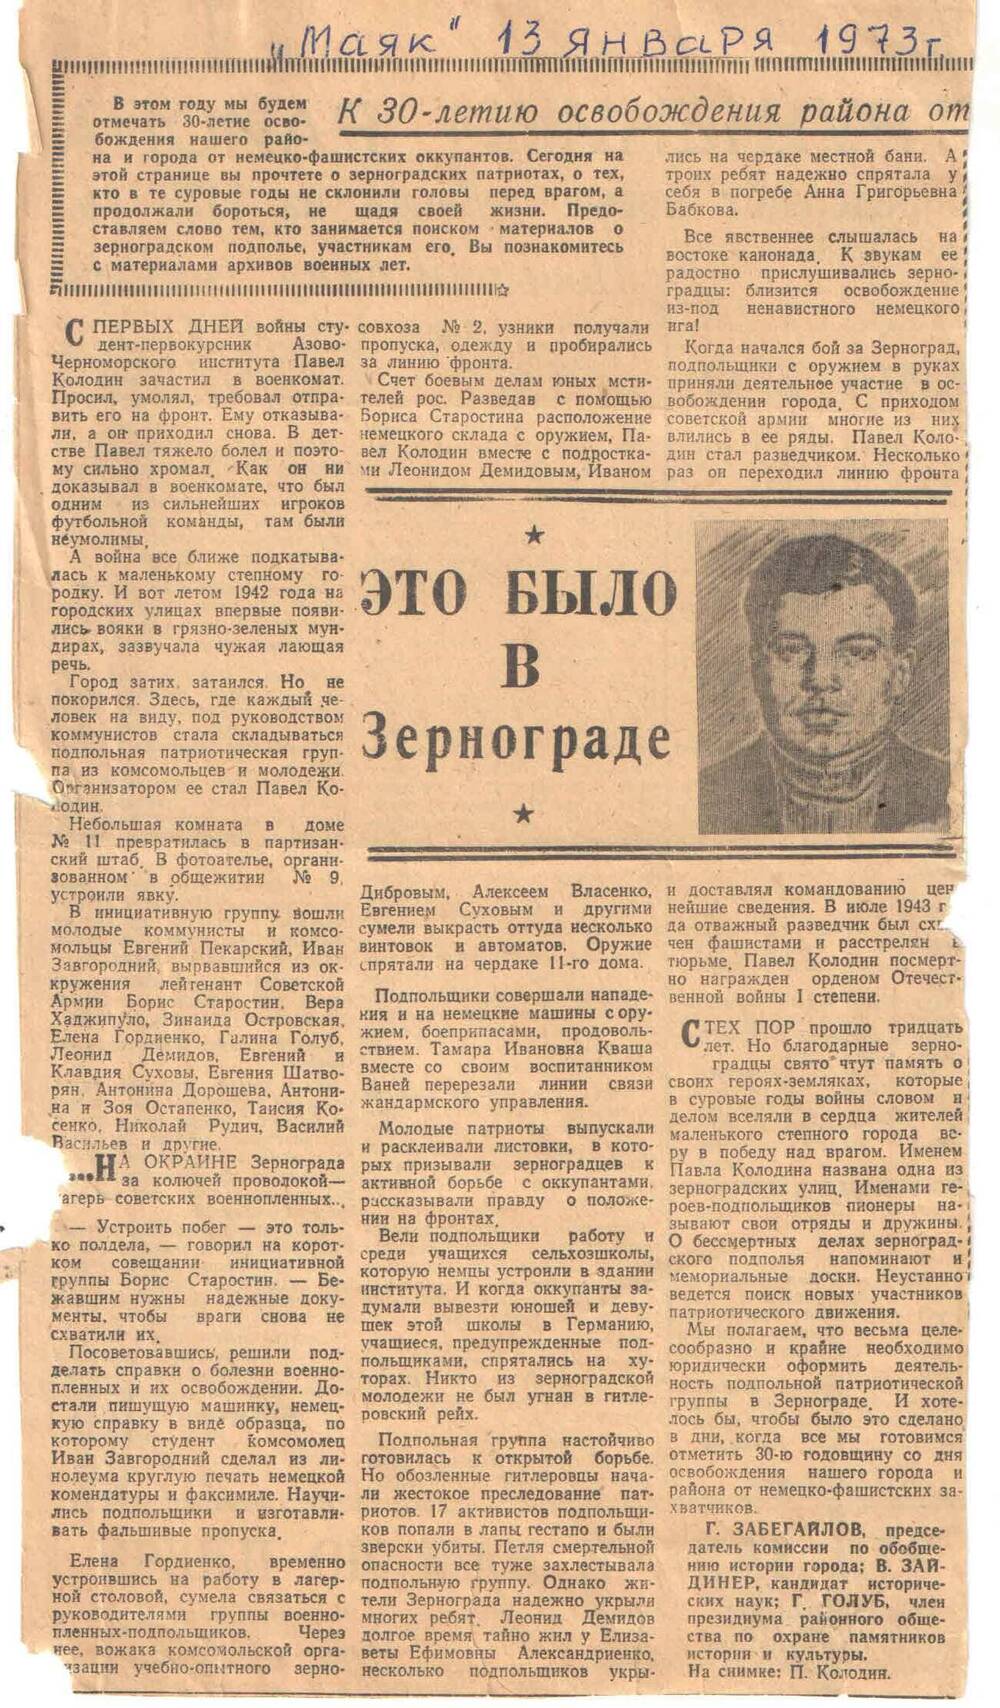 ст. Это было в Зернограде Г. Забегайлов Маяк 13.01.1973г.